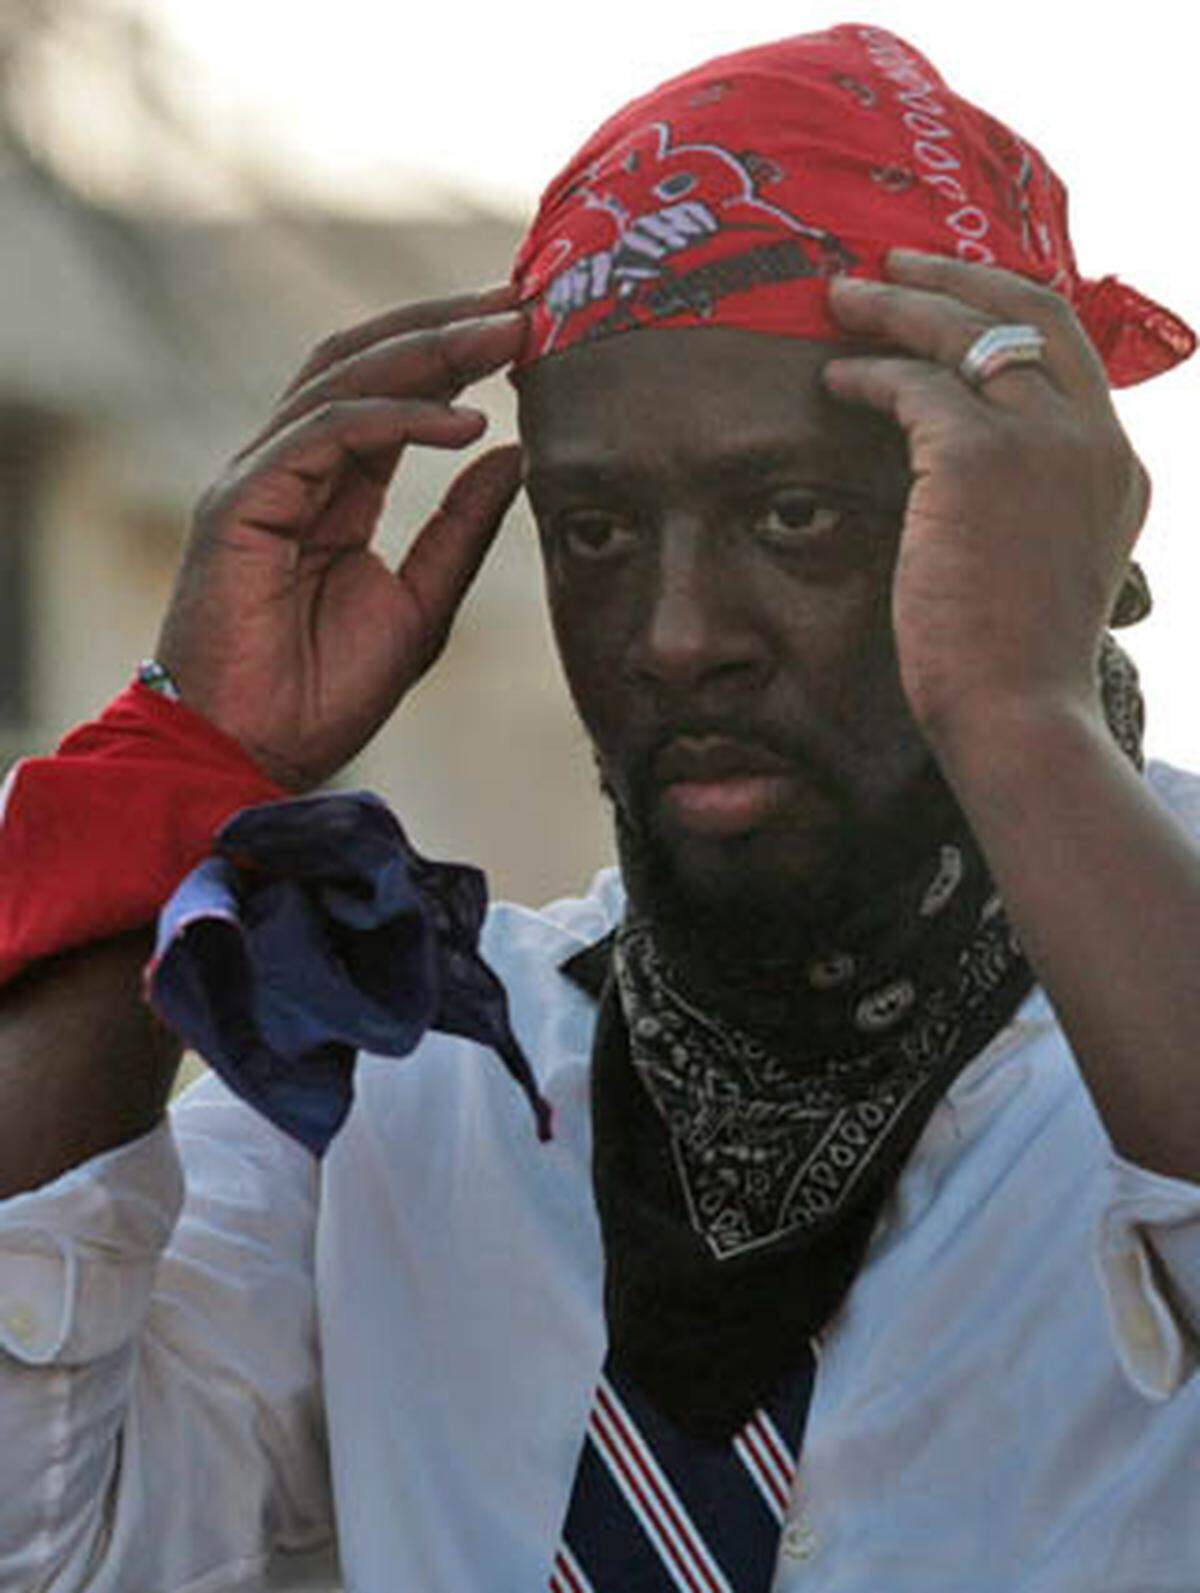 Neu auf der Liste der Künstler, die sich als Politiker versuchen, ist der Sänger Nelust Wyclef Jean. Der 37-Jährige wurde in Haiti geboren. Mit neun Jahren zog Jean mit seiner Familie in die USA. Mit seiner Musikgruppe 'The Fugees' erlang er mit Hits wie 'Killing me softly' oder 'Ready or Not' Weltruhm. Heute möchte Wyclef Jean Präsident seiner Heimat Haiti werden. Wyclef hat sich schon im Vorfeld mit seiner Charity-Organisation 'Yéle Haiti' für den Inselstaat sozial engagiert. „Ich möchte Präsident Barack Obama sagen, dass die USA Obama haben und Haiti Wyclef Jean“, sagte Wyclef Jean nach seiner Registrierung als Kandidat am Donnerstag in der Hauptstadt Port-au-Prince. Am 28.November finden die Wahlen in Haiti statt.